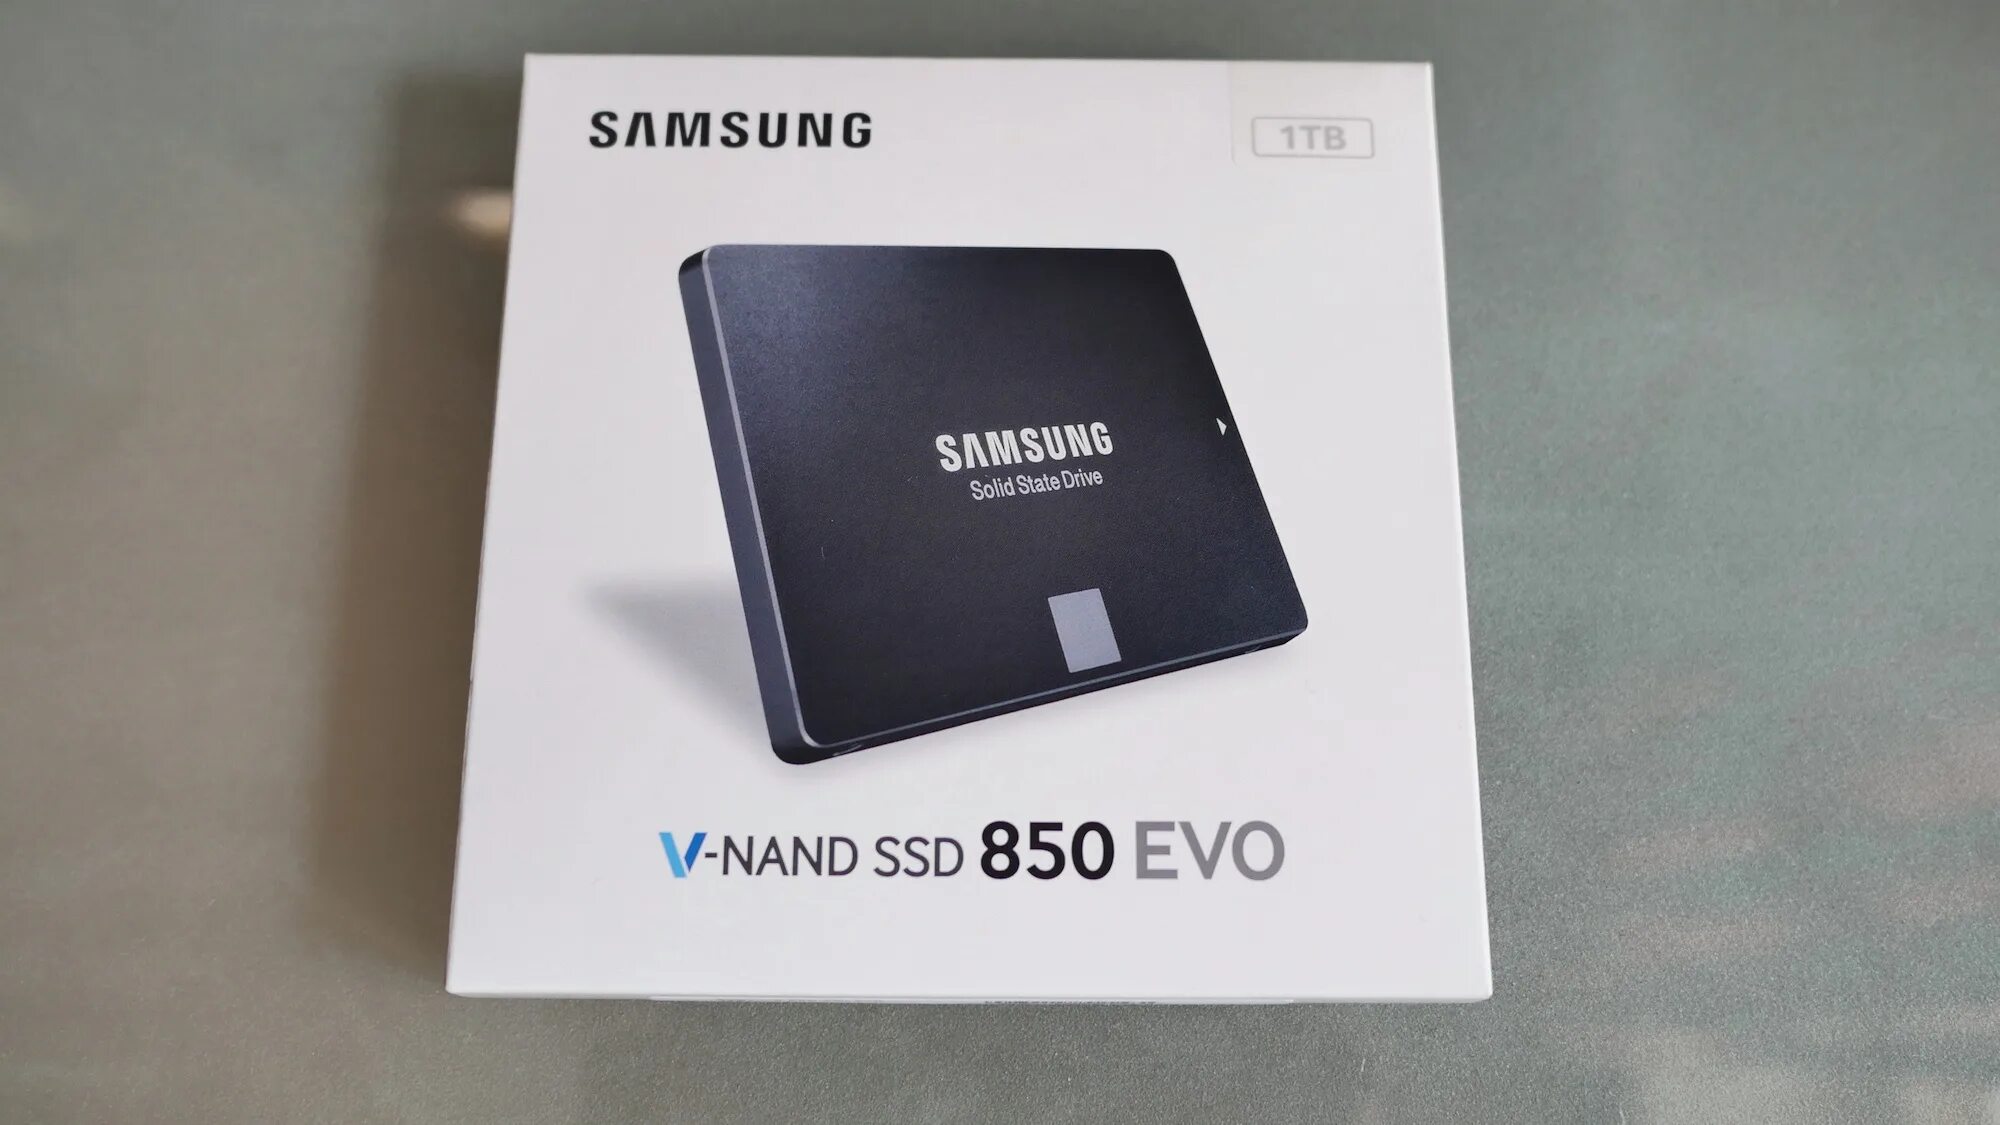 Samsung evo 1tb купить. Samsung 850 EVO 1tb. Samsung SSD 850 EVO. Samsung SSD 850 EVO 1tb Repair. MZ-75e1t0.